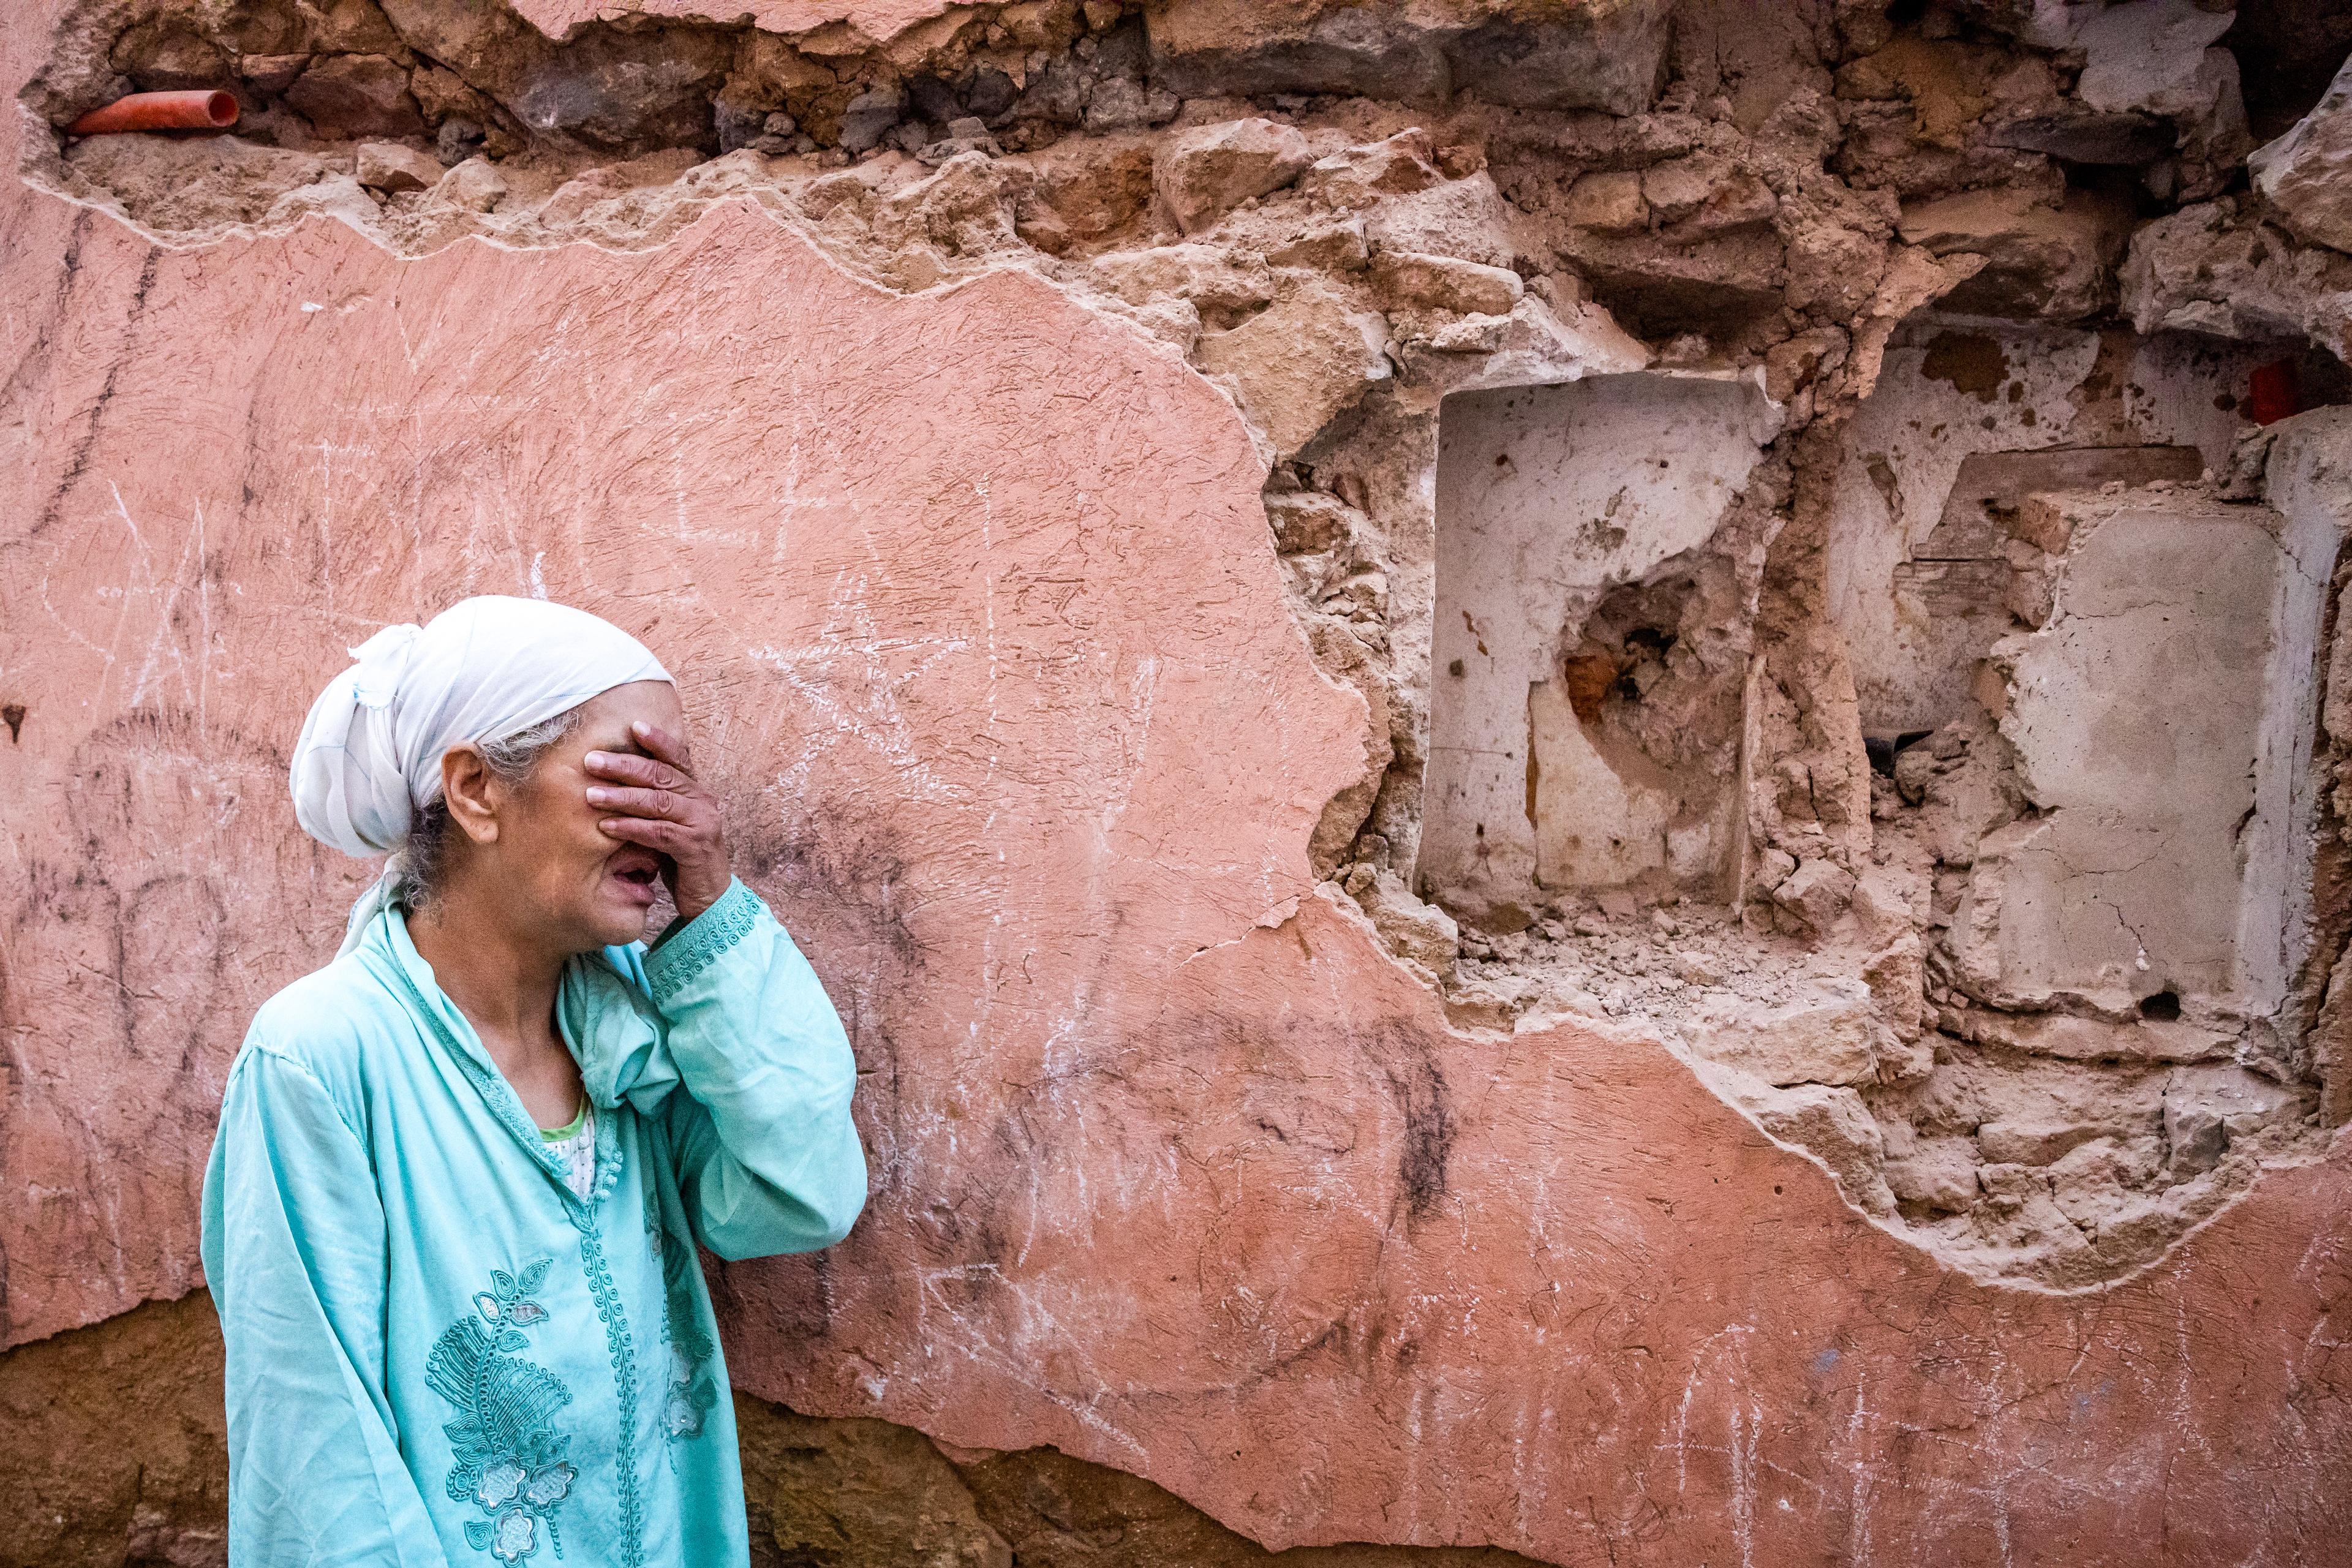 Kobieta płacząca zasłania oczy, w tle zrujnowany budynek